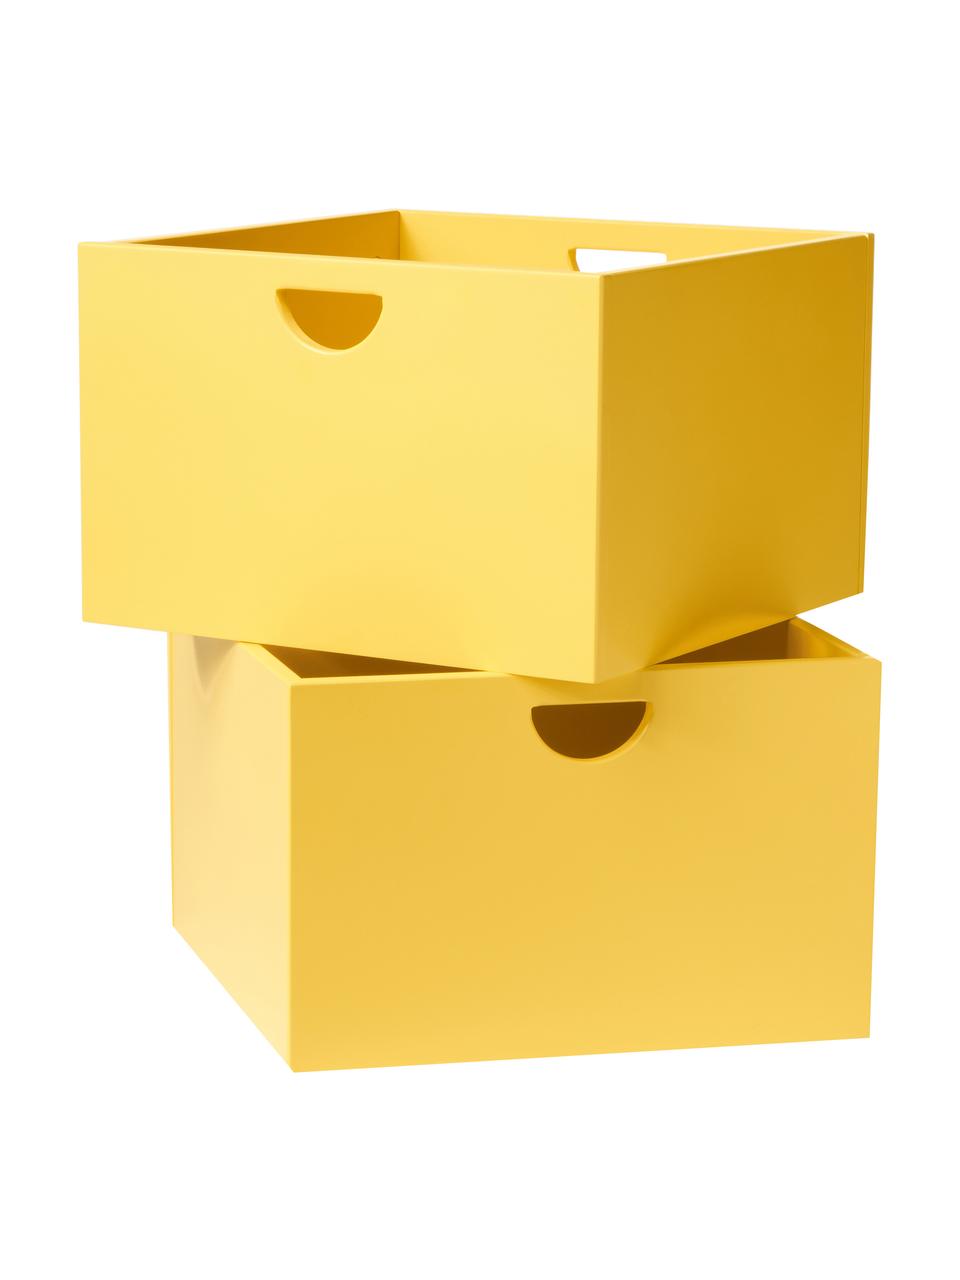 Zásuvky Nunila, 2 ks, Lakovaná MDF deska (dřevovláknitá deska střední hustoty), Žlutá, Š 36 cm, V 25 cm